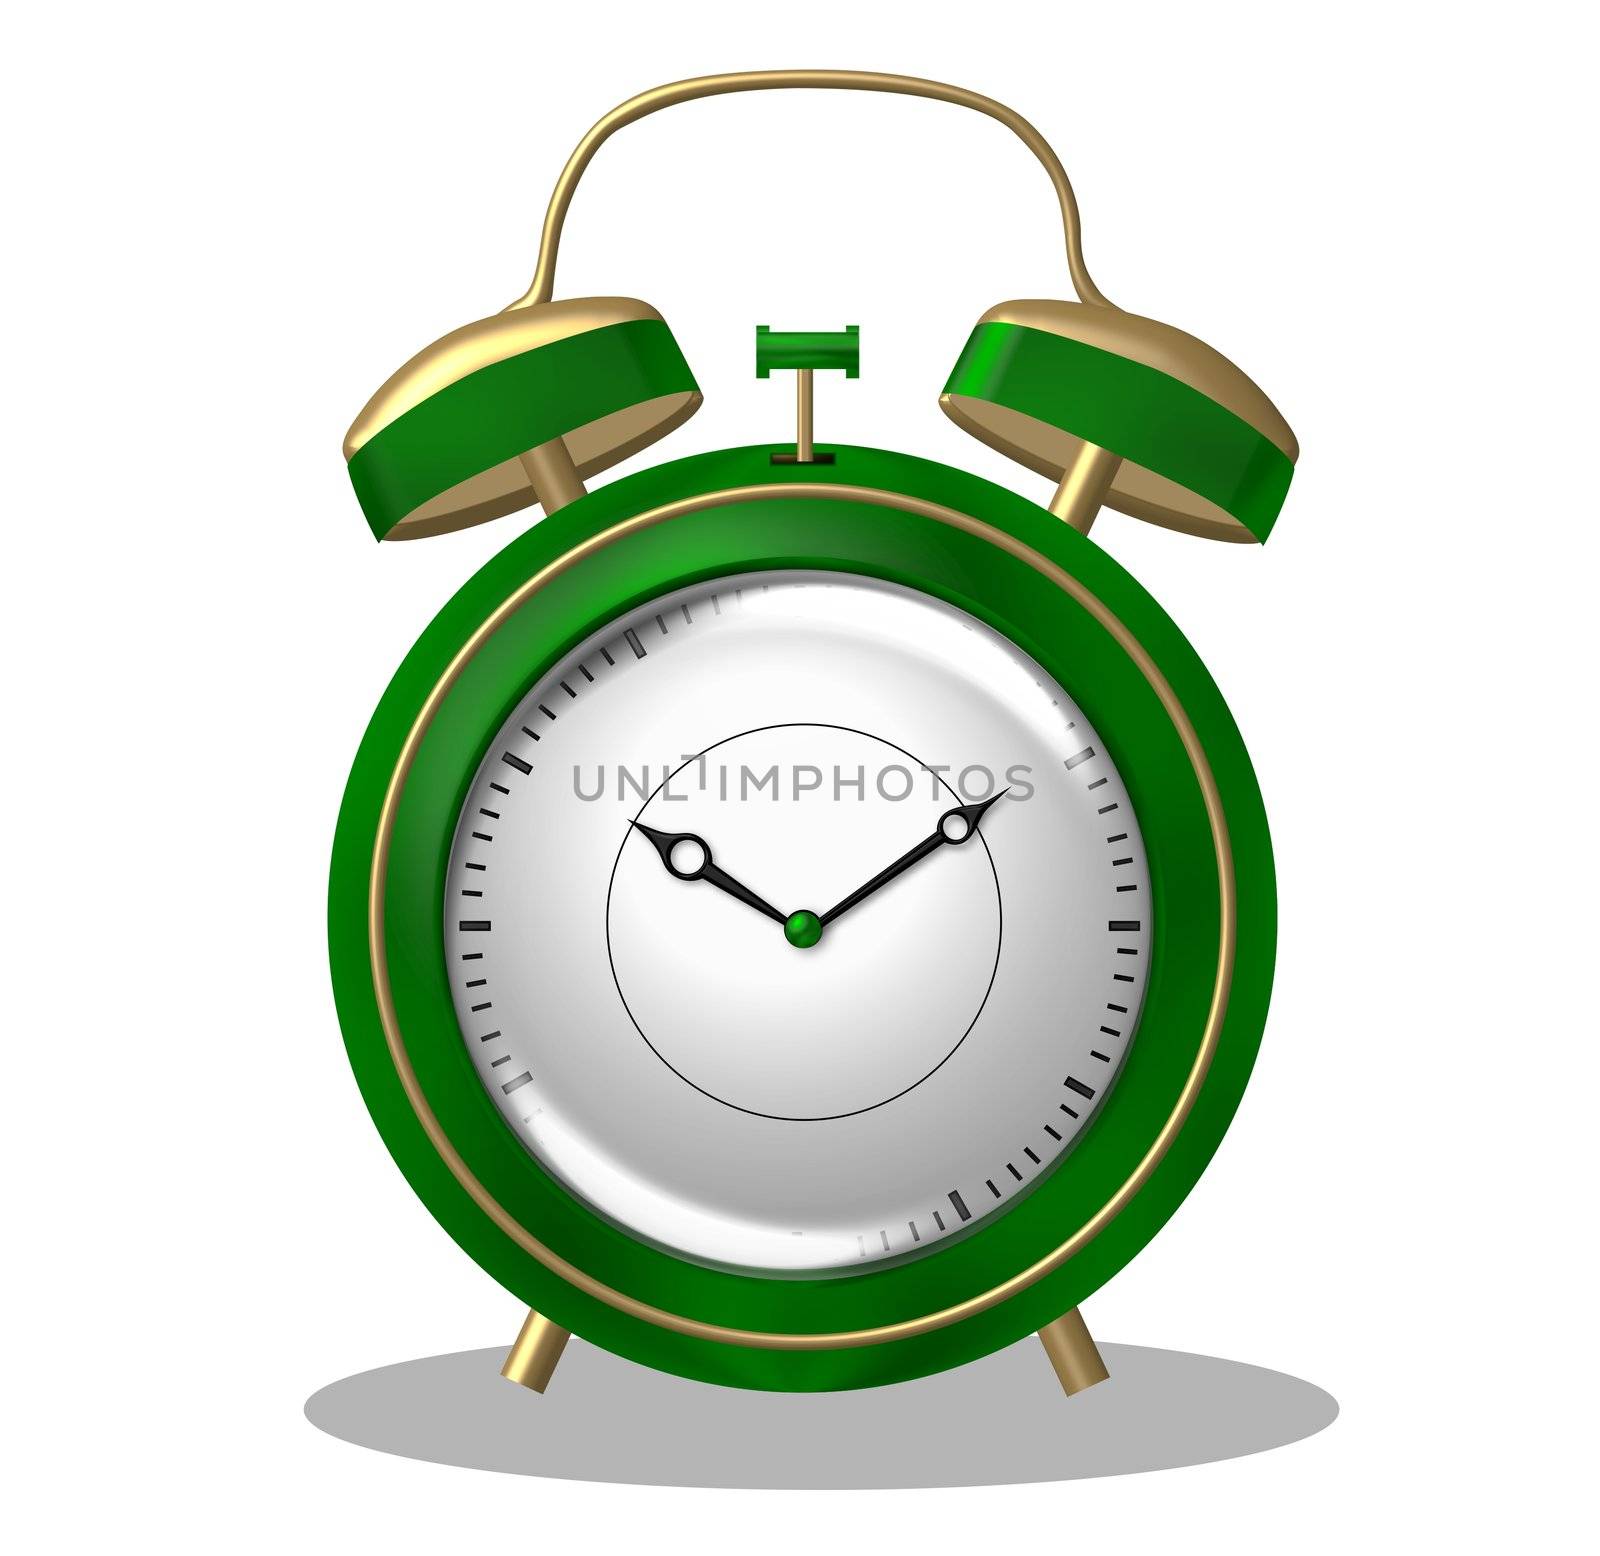 
Illustration of a green alarm clock